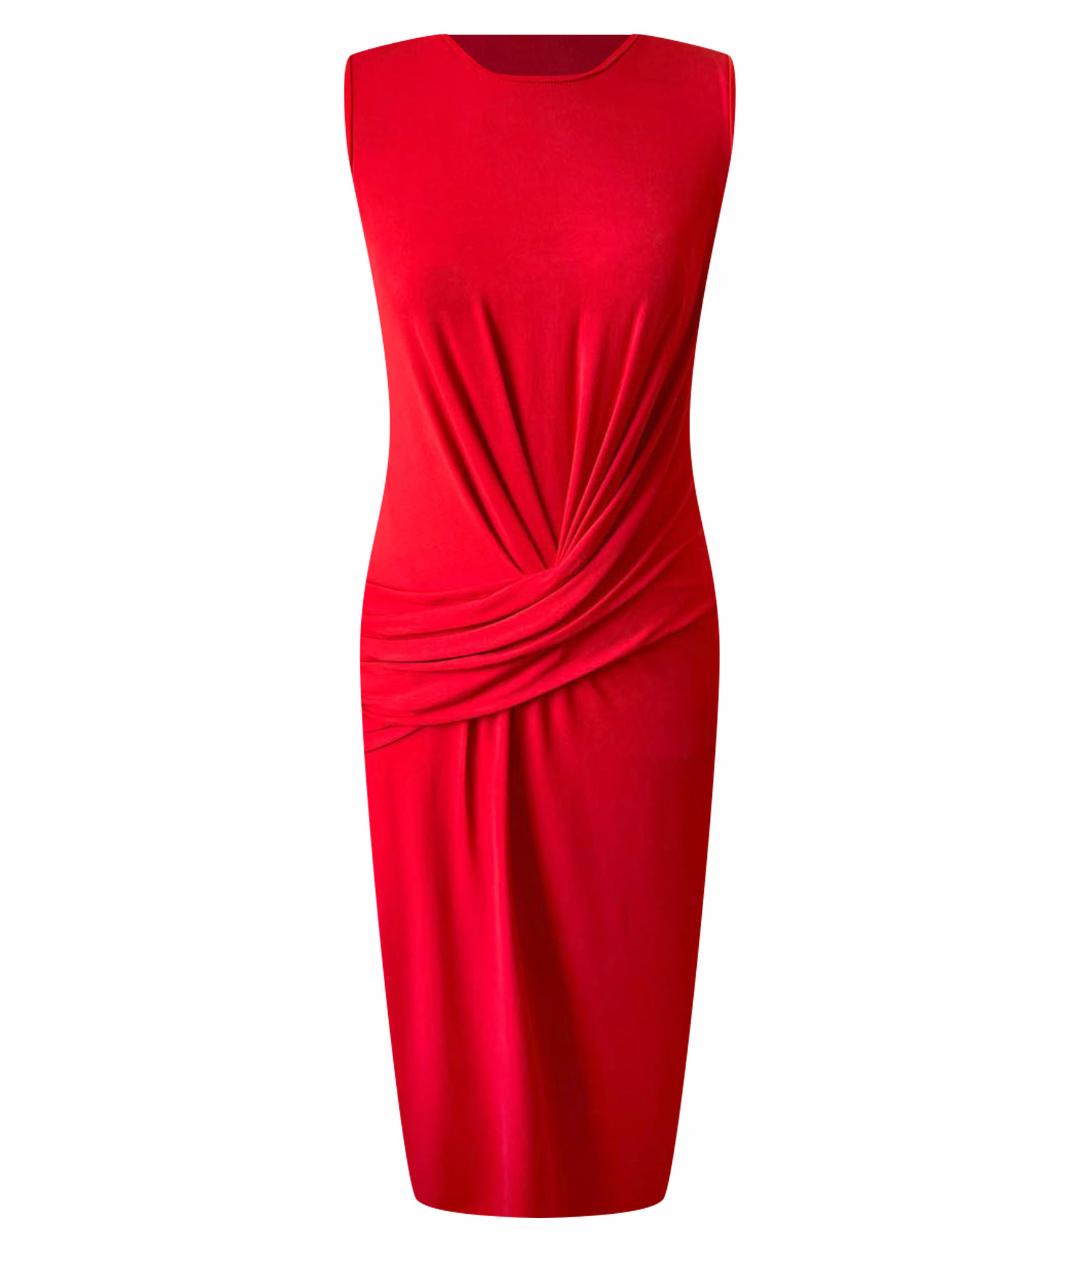 MICHAEL KORS COLLECTION Красное коктейльное платье, фото 1